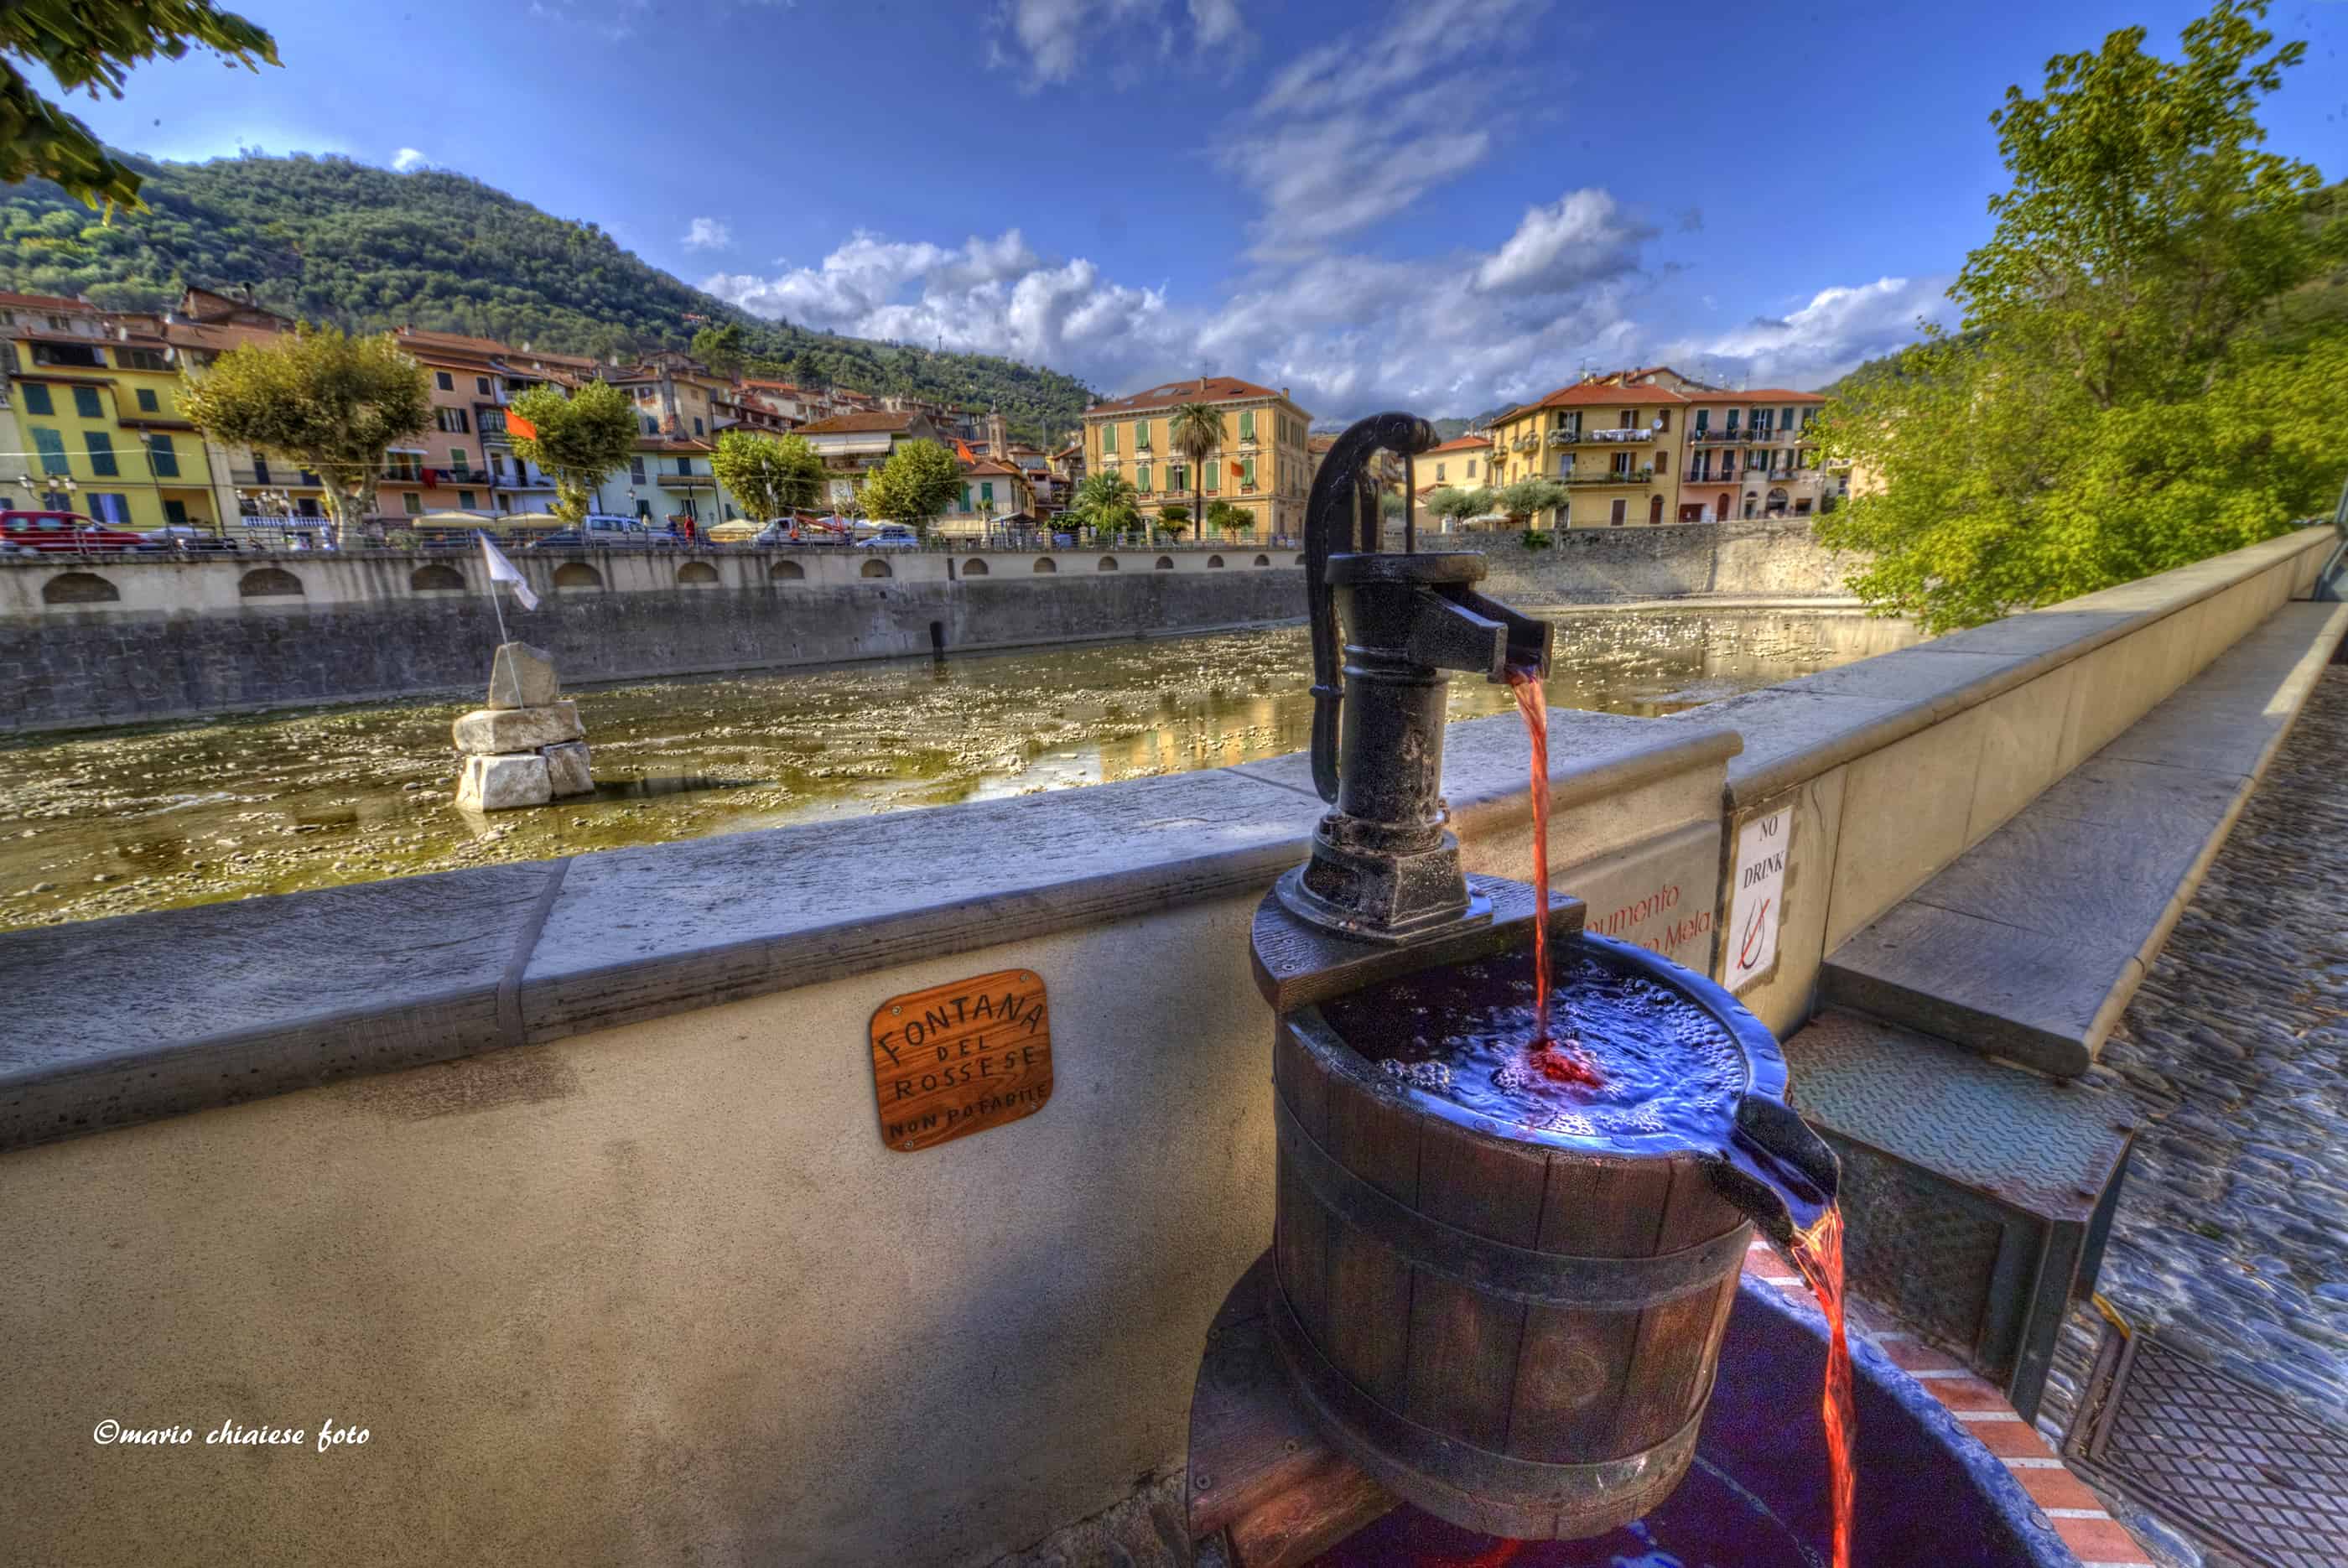 Il borgo di Dolceacqua in Liguria nonostante il suo nome è conosciuto anche per il suo famoso vino: il Rossese. Tanto famoso da potersi permettere anche una fontana in piazza... peccato però che non sia di vino.  | Mario Chiaiese - e-borghi Community